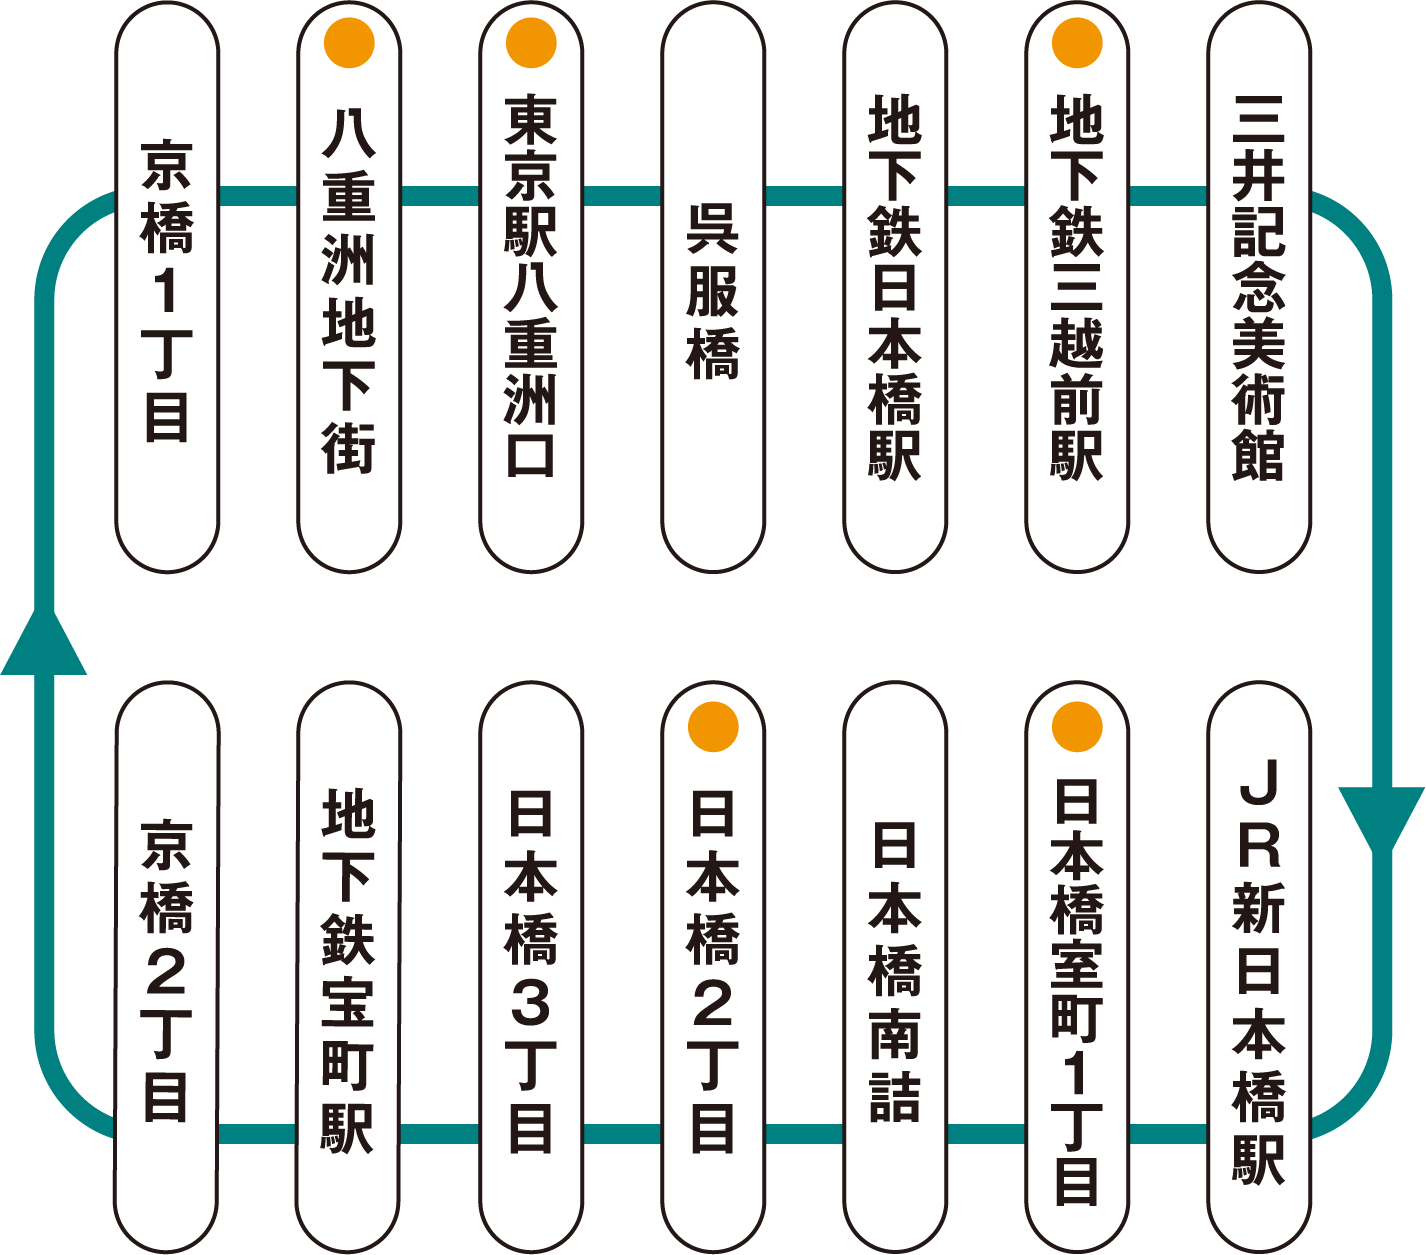 メトロリンク日本橋 Metro link Nihonbashi 停留所